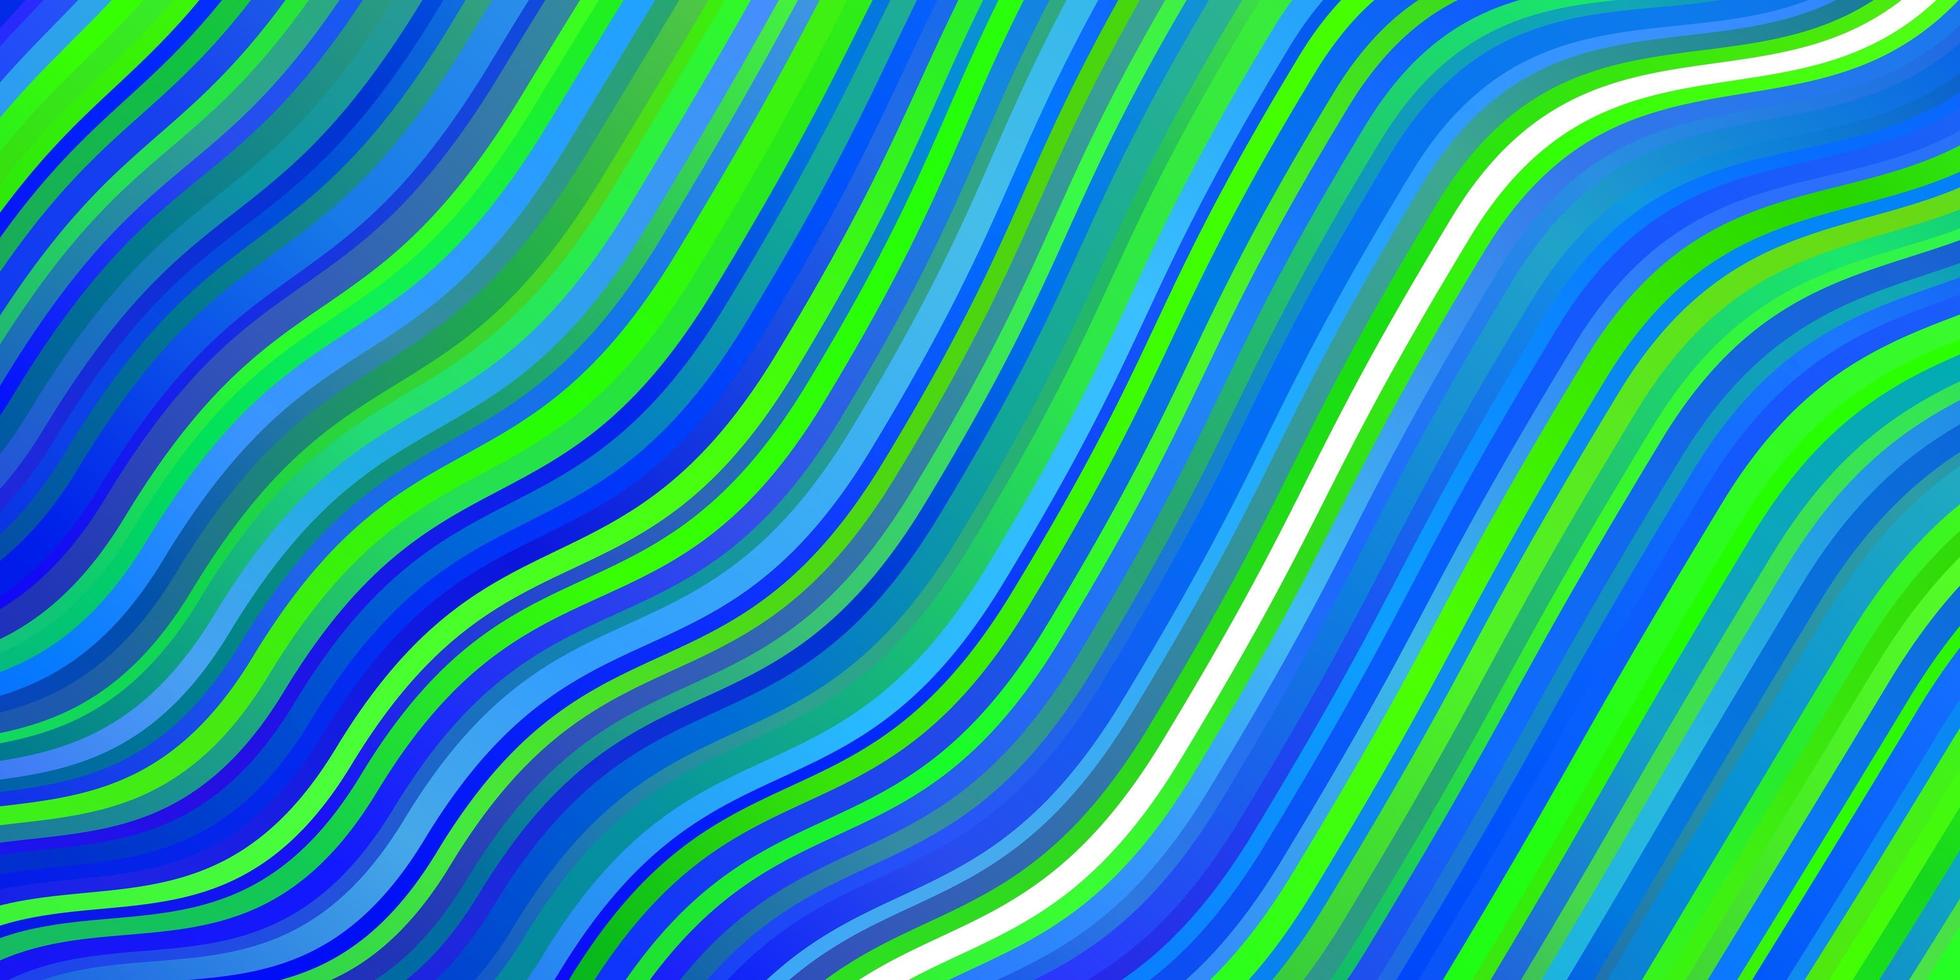 textura vector azul, verde claro com arco circular.